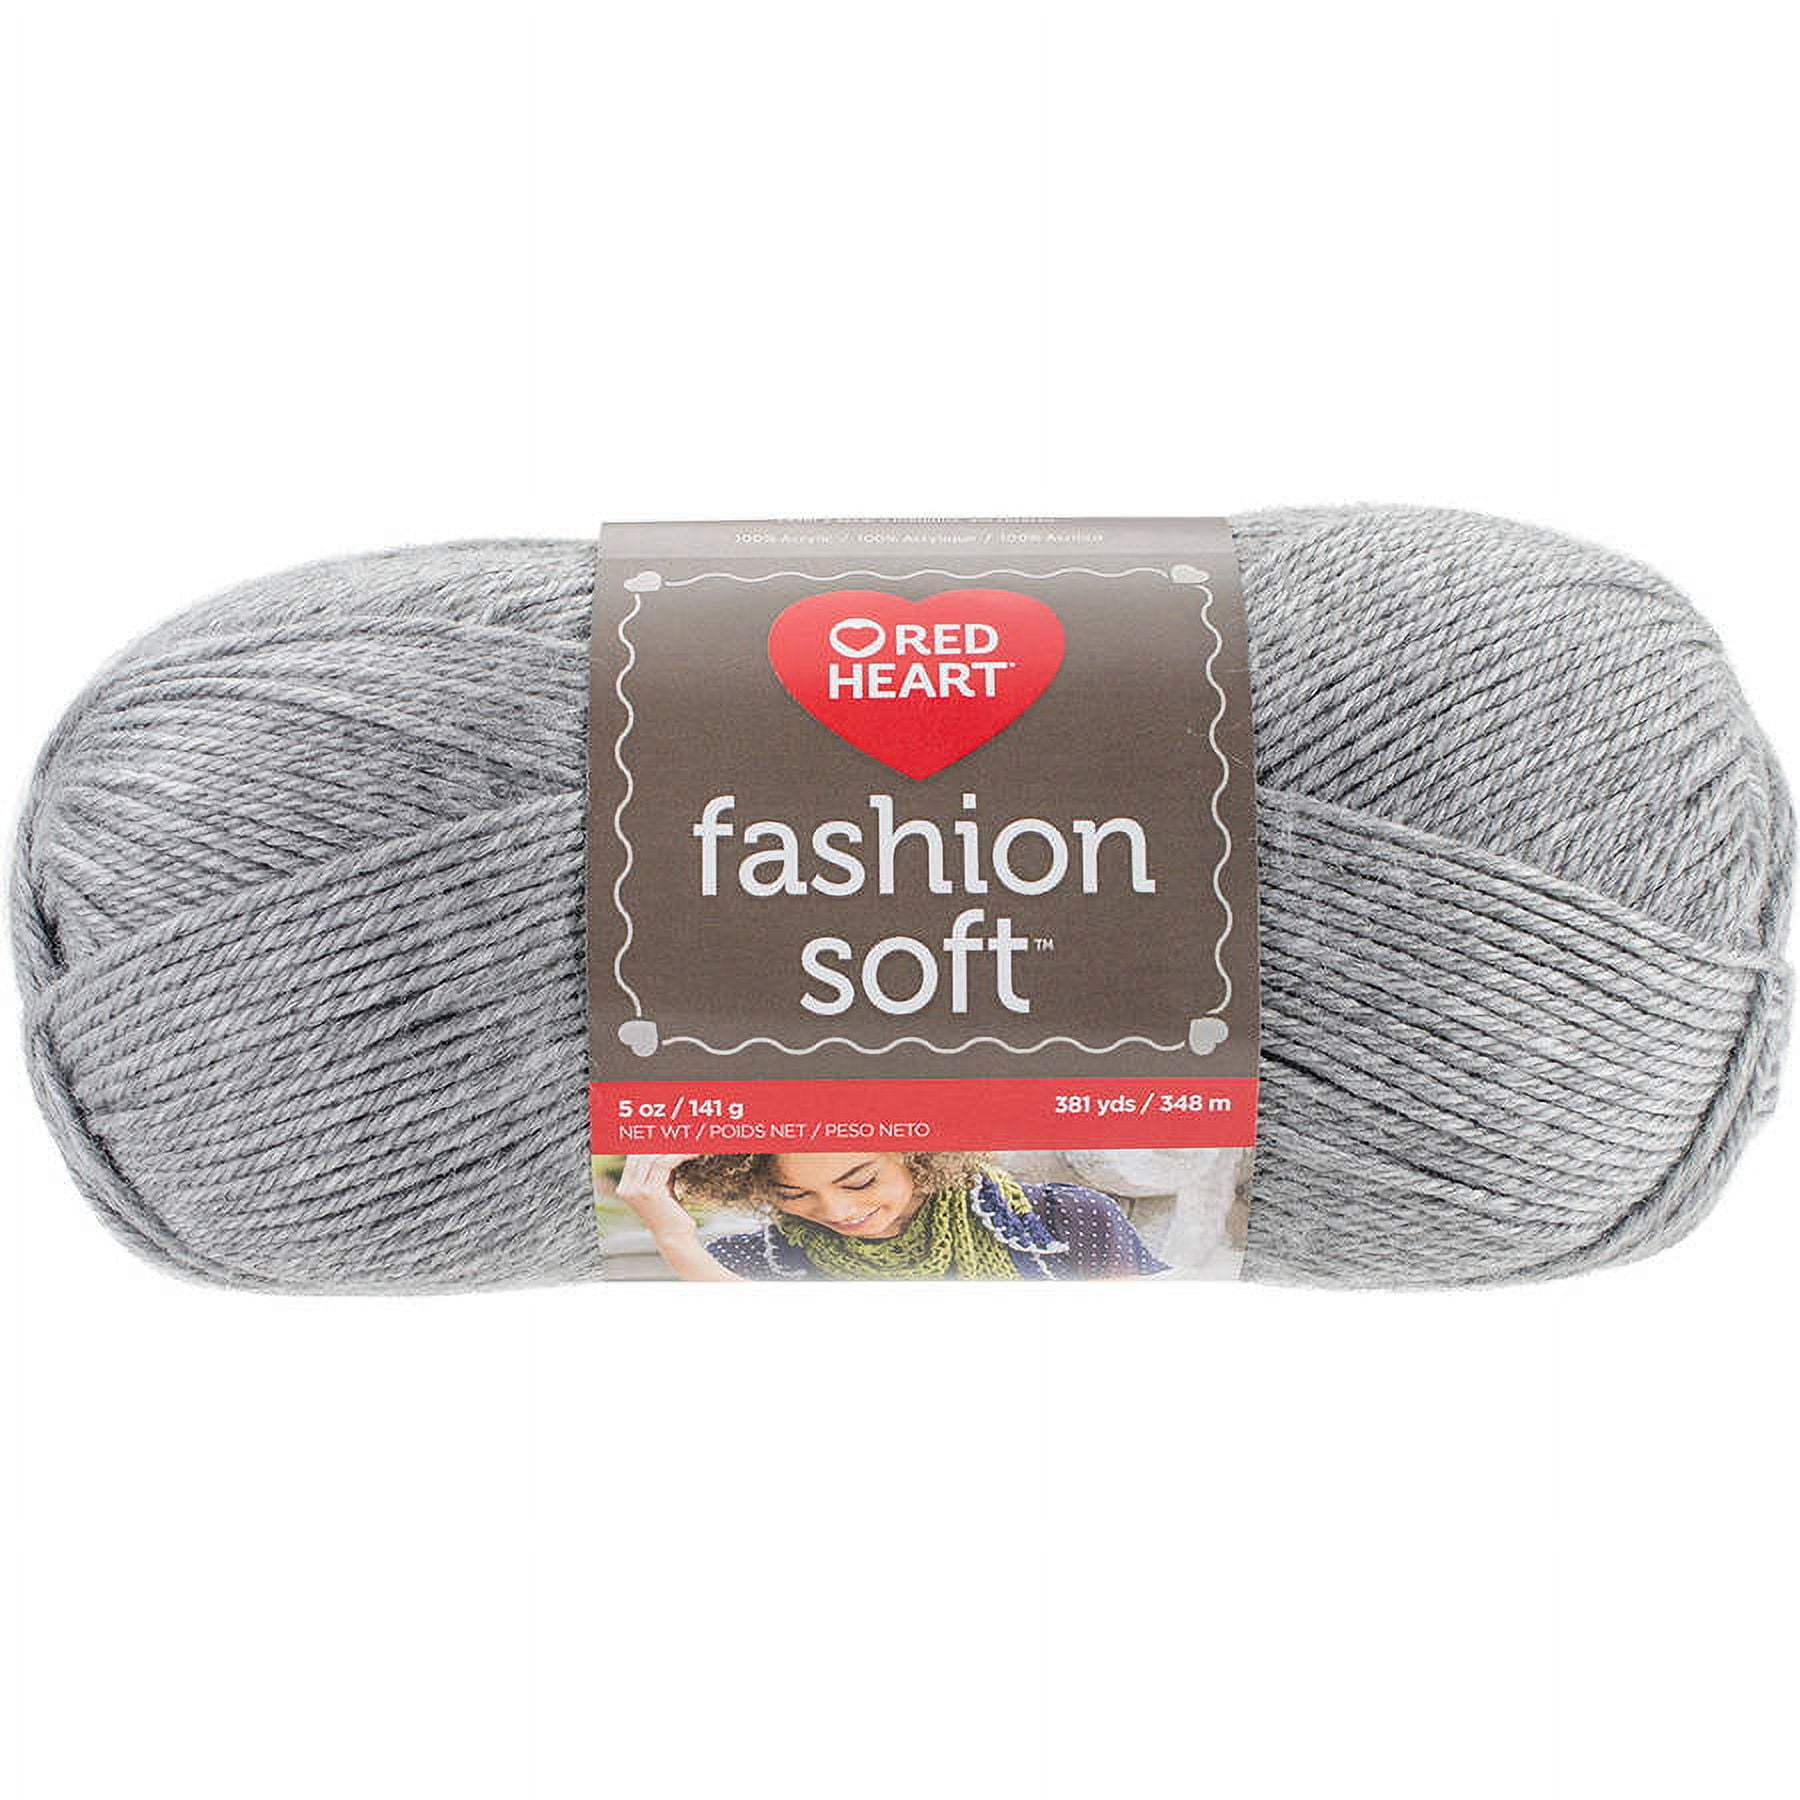 Red Heart Fashion Soft Yarn, Grey Heather